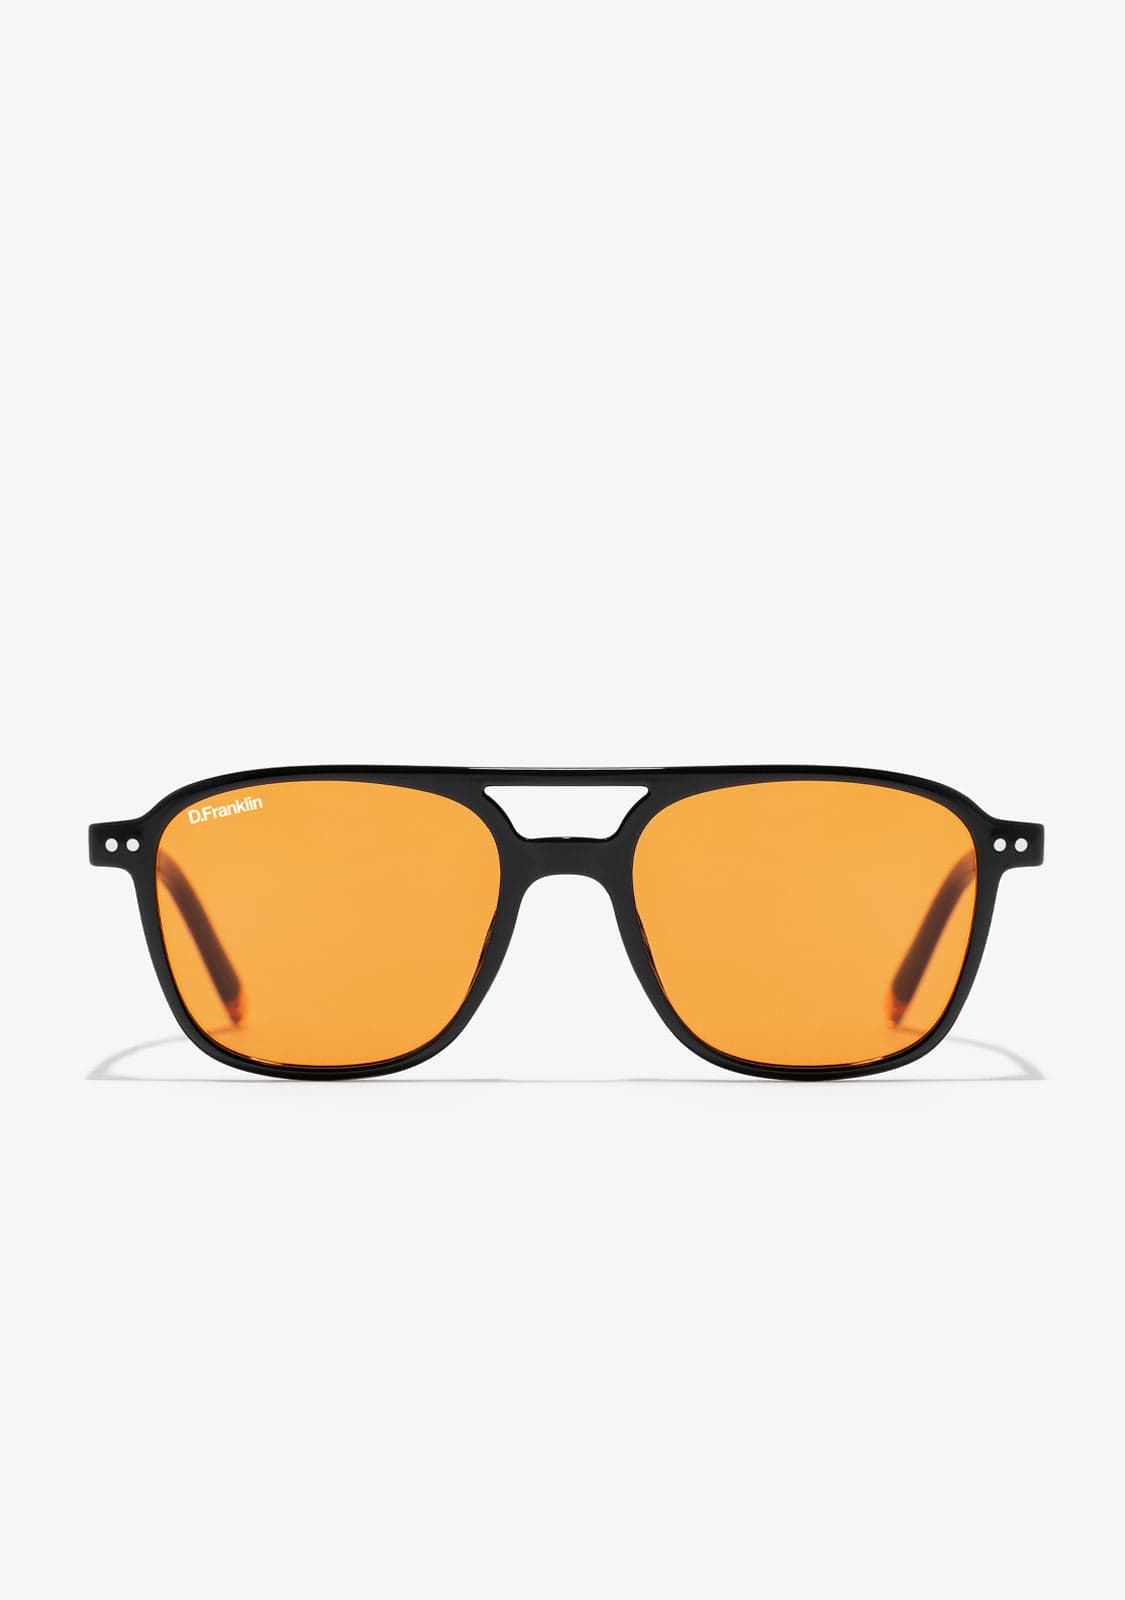 Las gafas de sol para hombre que son tendencia en 2019